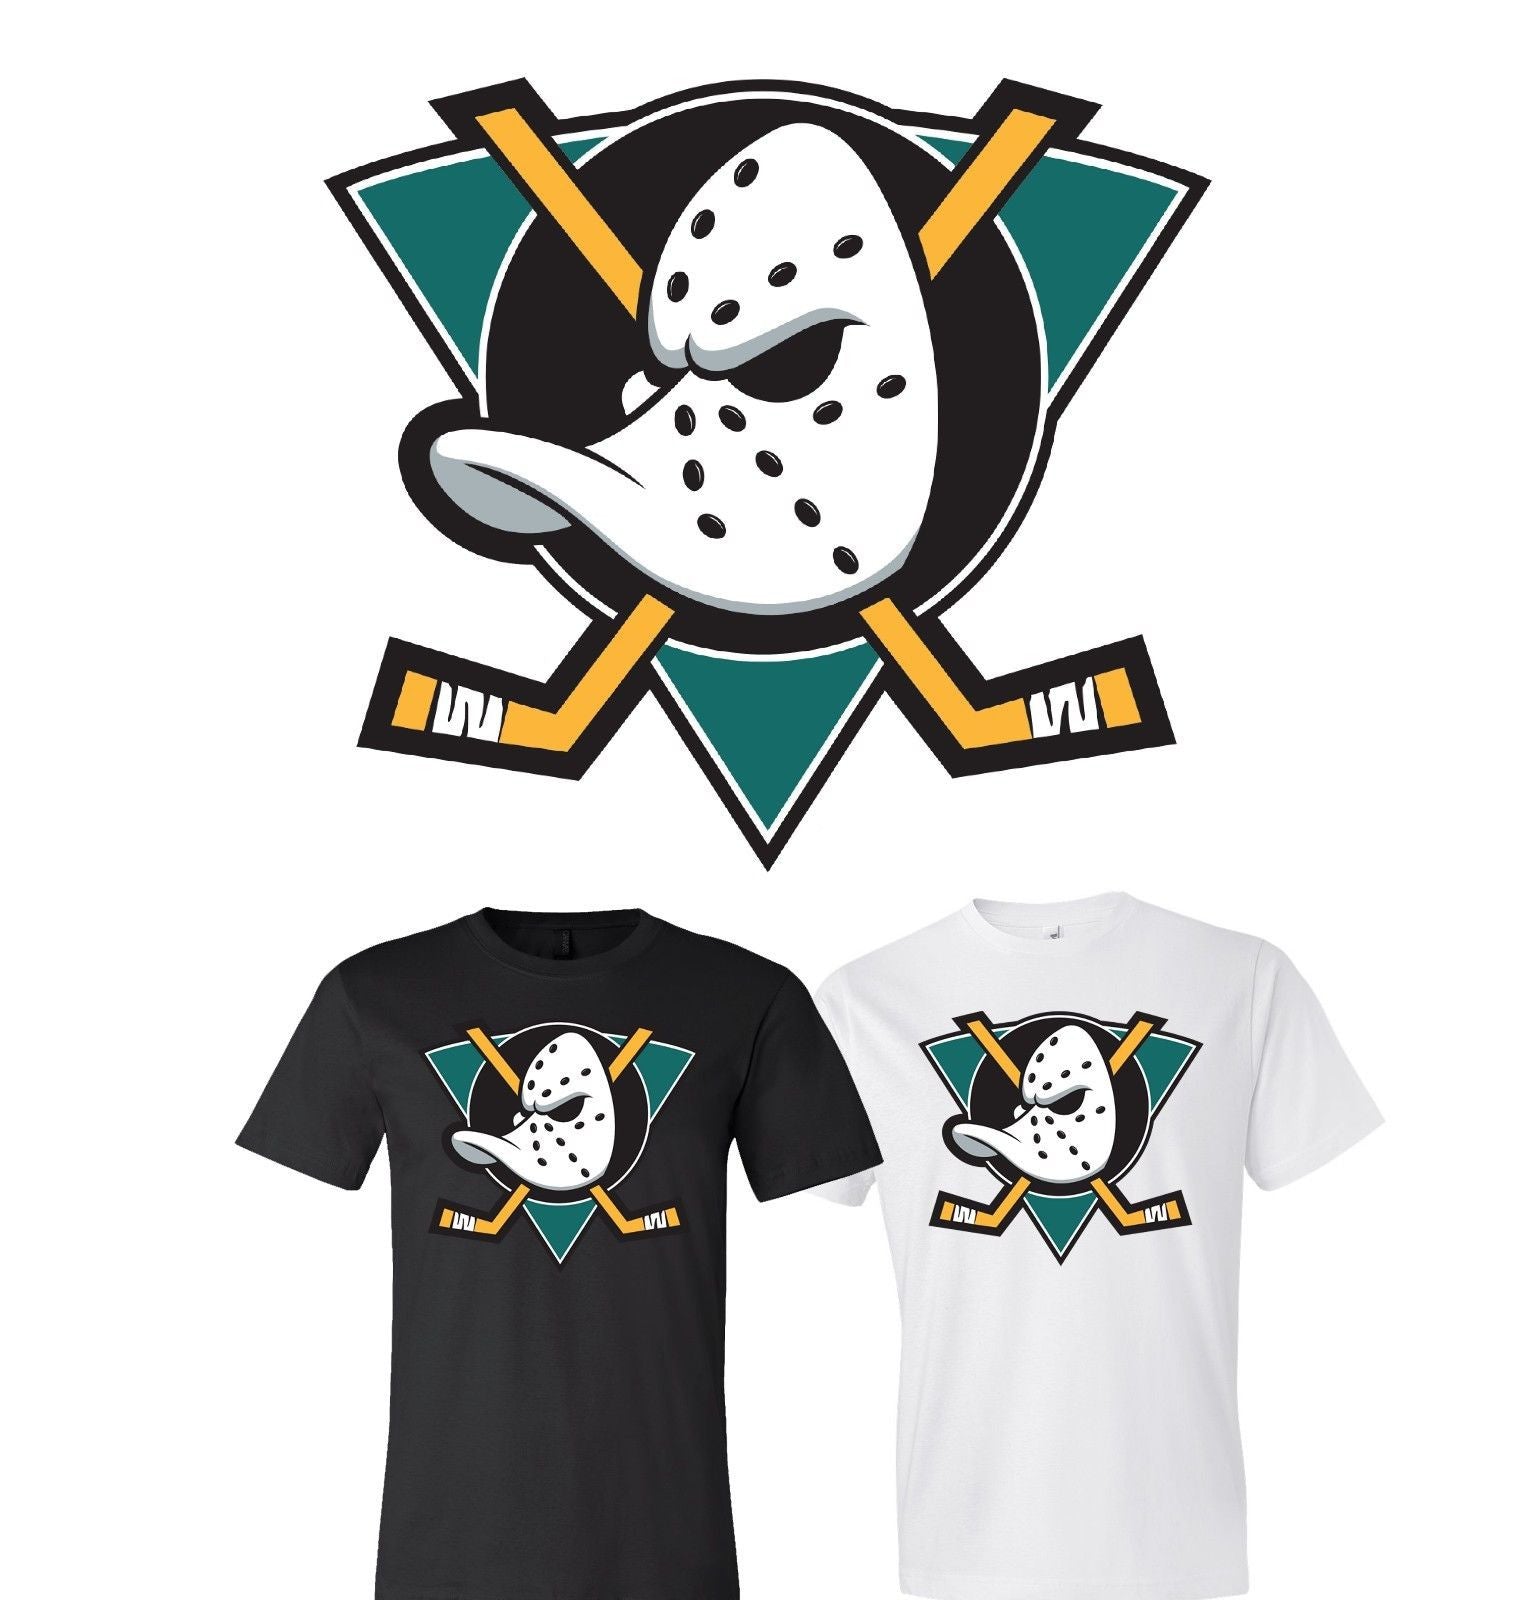 Anaheim Ducks T-Shirts in Anaheim Ducks Team Shop 